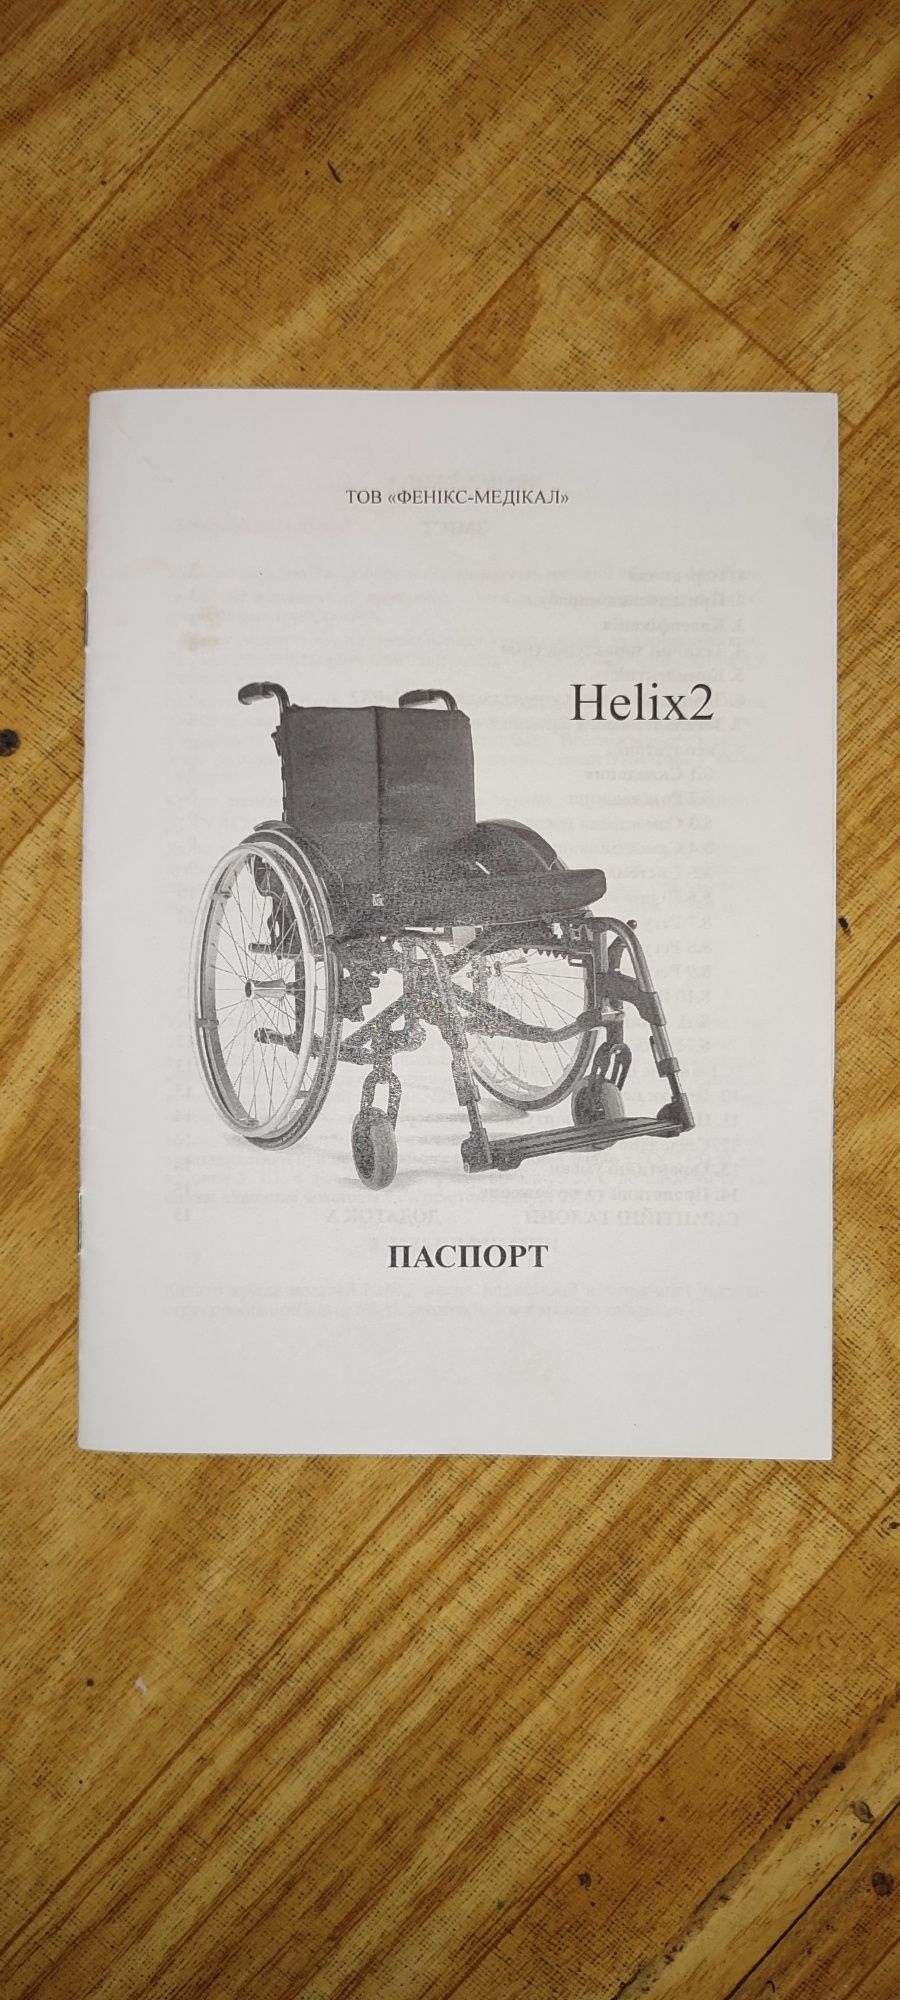 Активная инвалидная коляска - Helix2